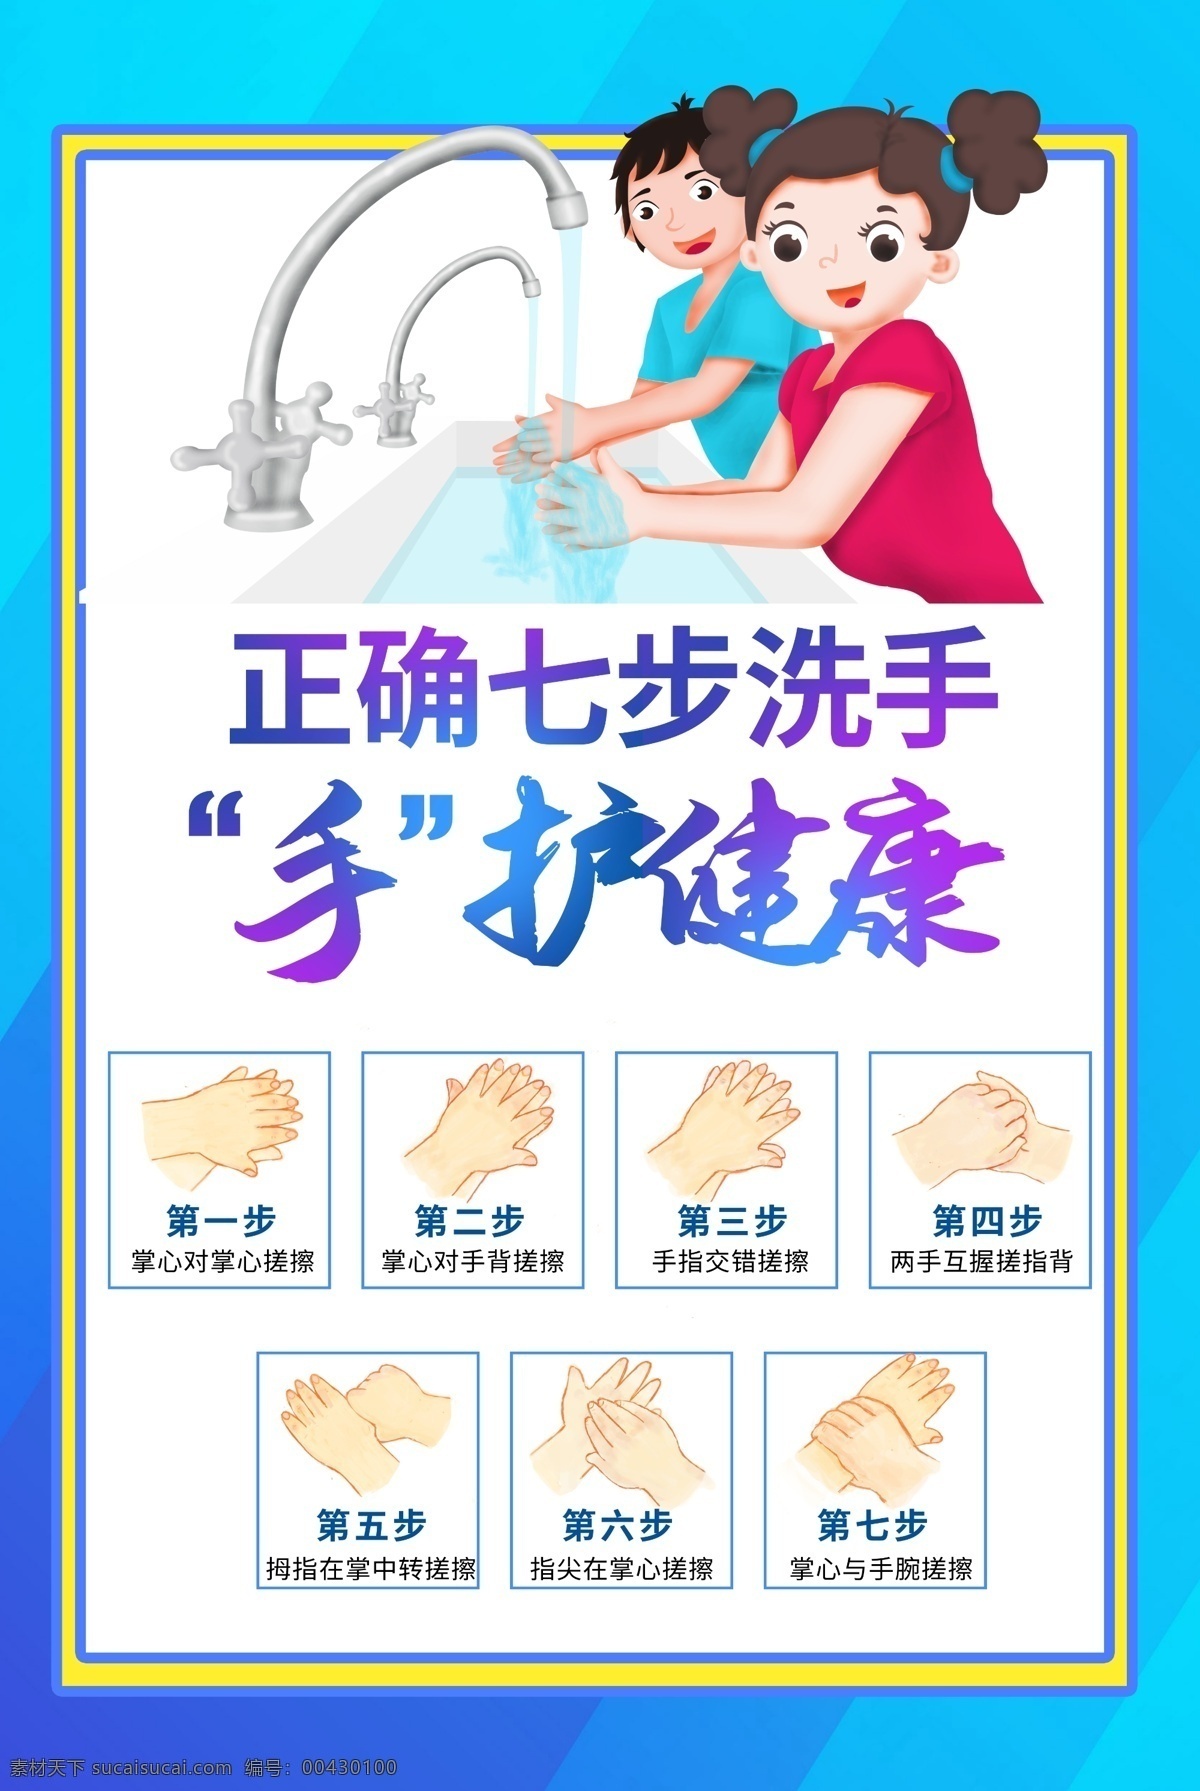 洗手图片 洗手步骤 洗手方法 洗手方式 矢量洗手 洗手 卡通洗手 手绘洗手 洗手插画 洗手教程 保持卫生 卫生 干净 手 人物图库